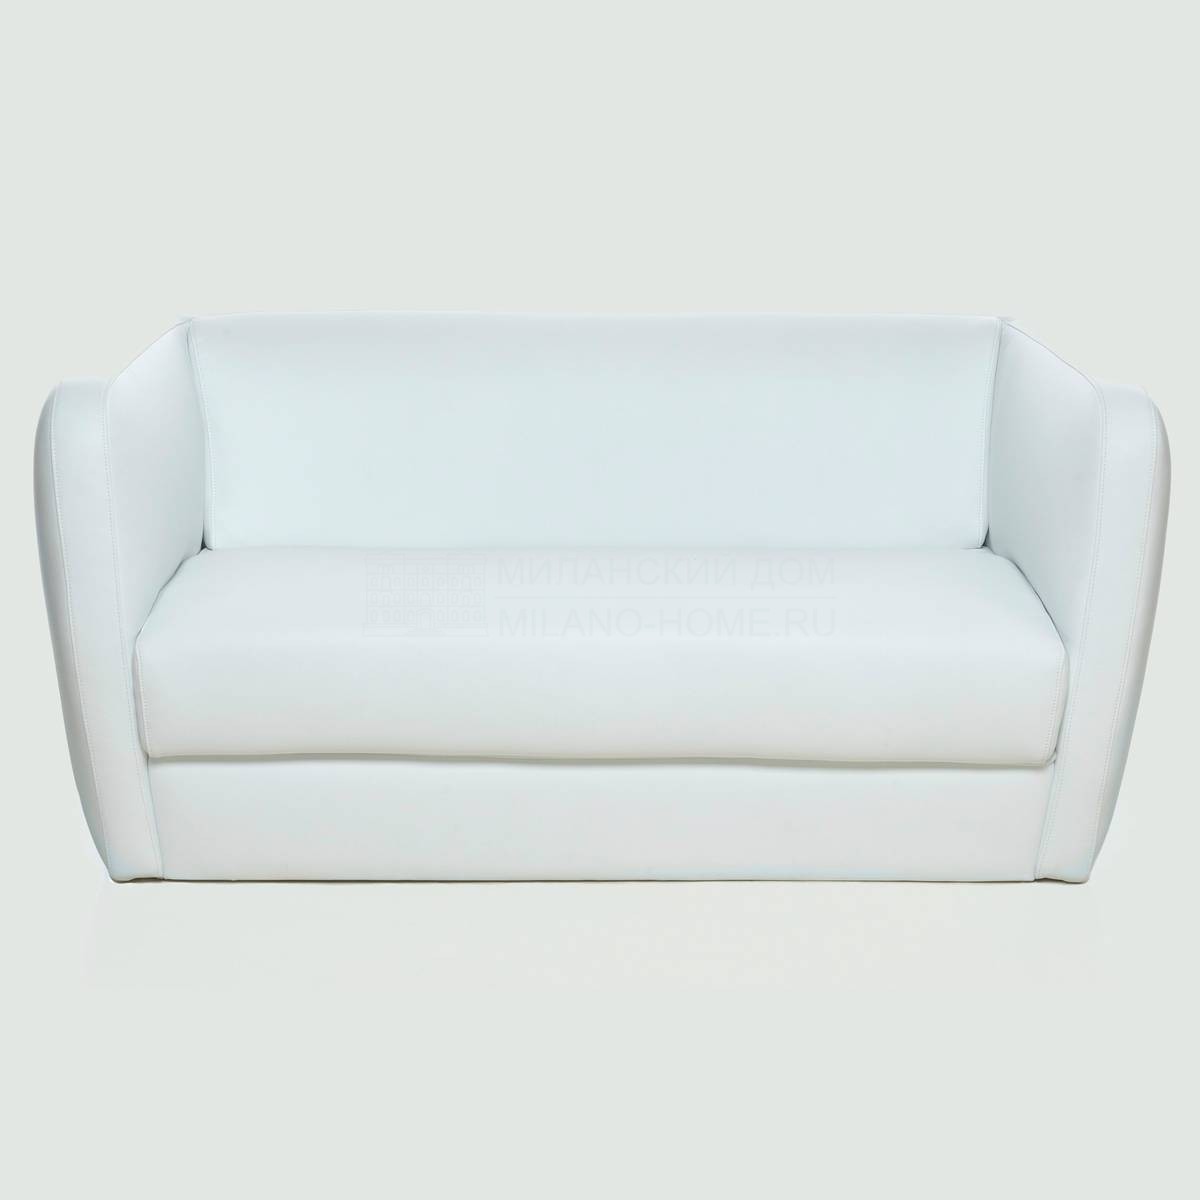 Прямой диван IG2 sofa из Италии фабрики DOMODINAMICA